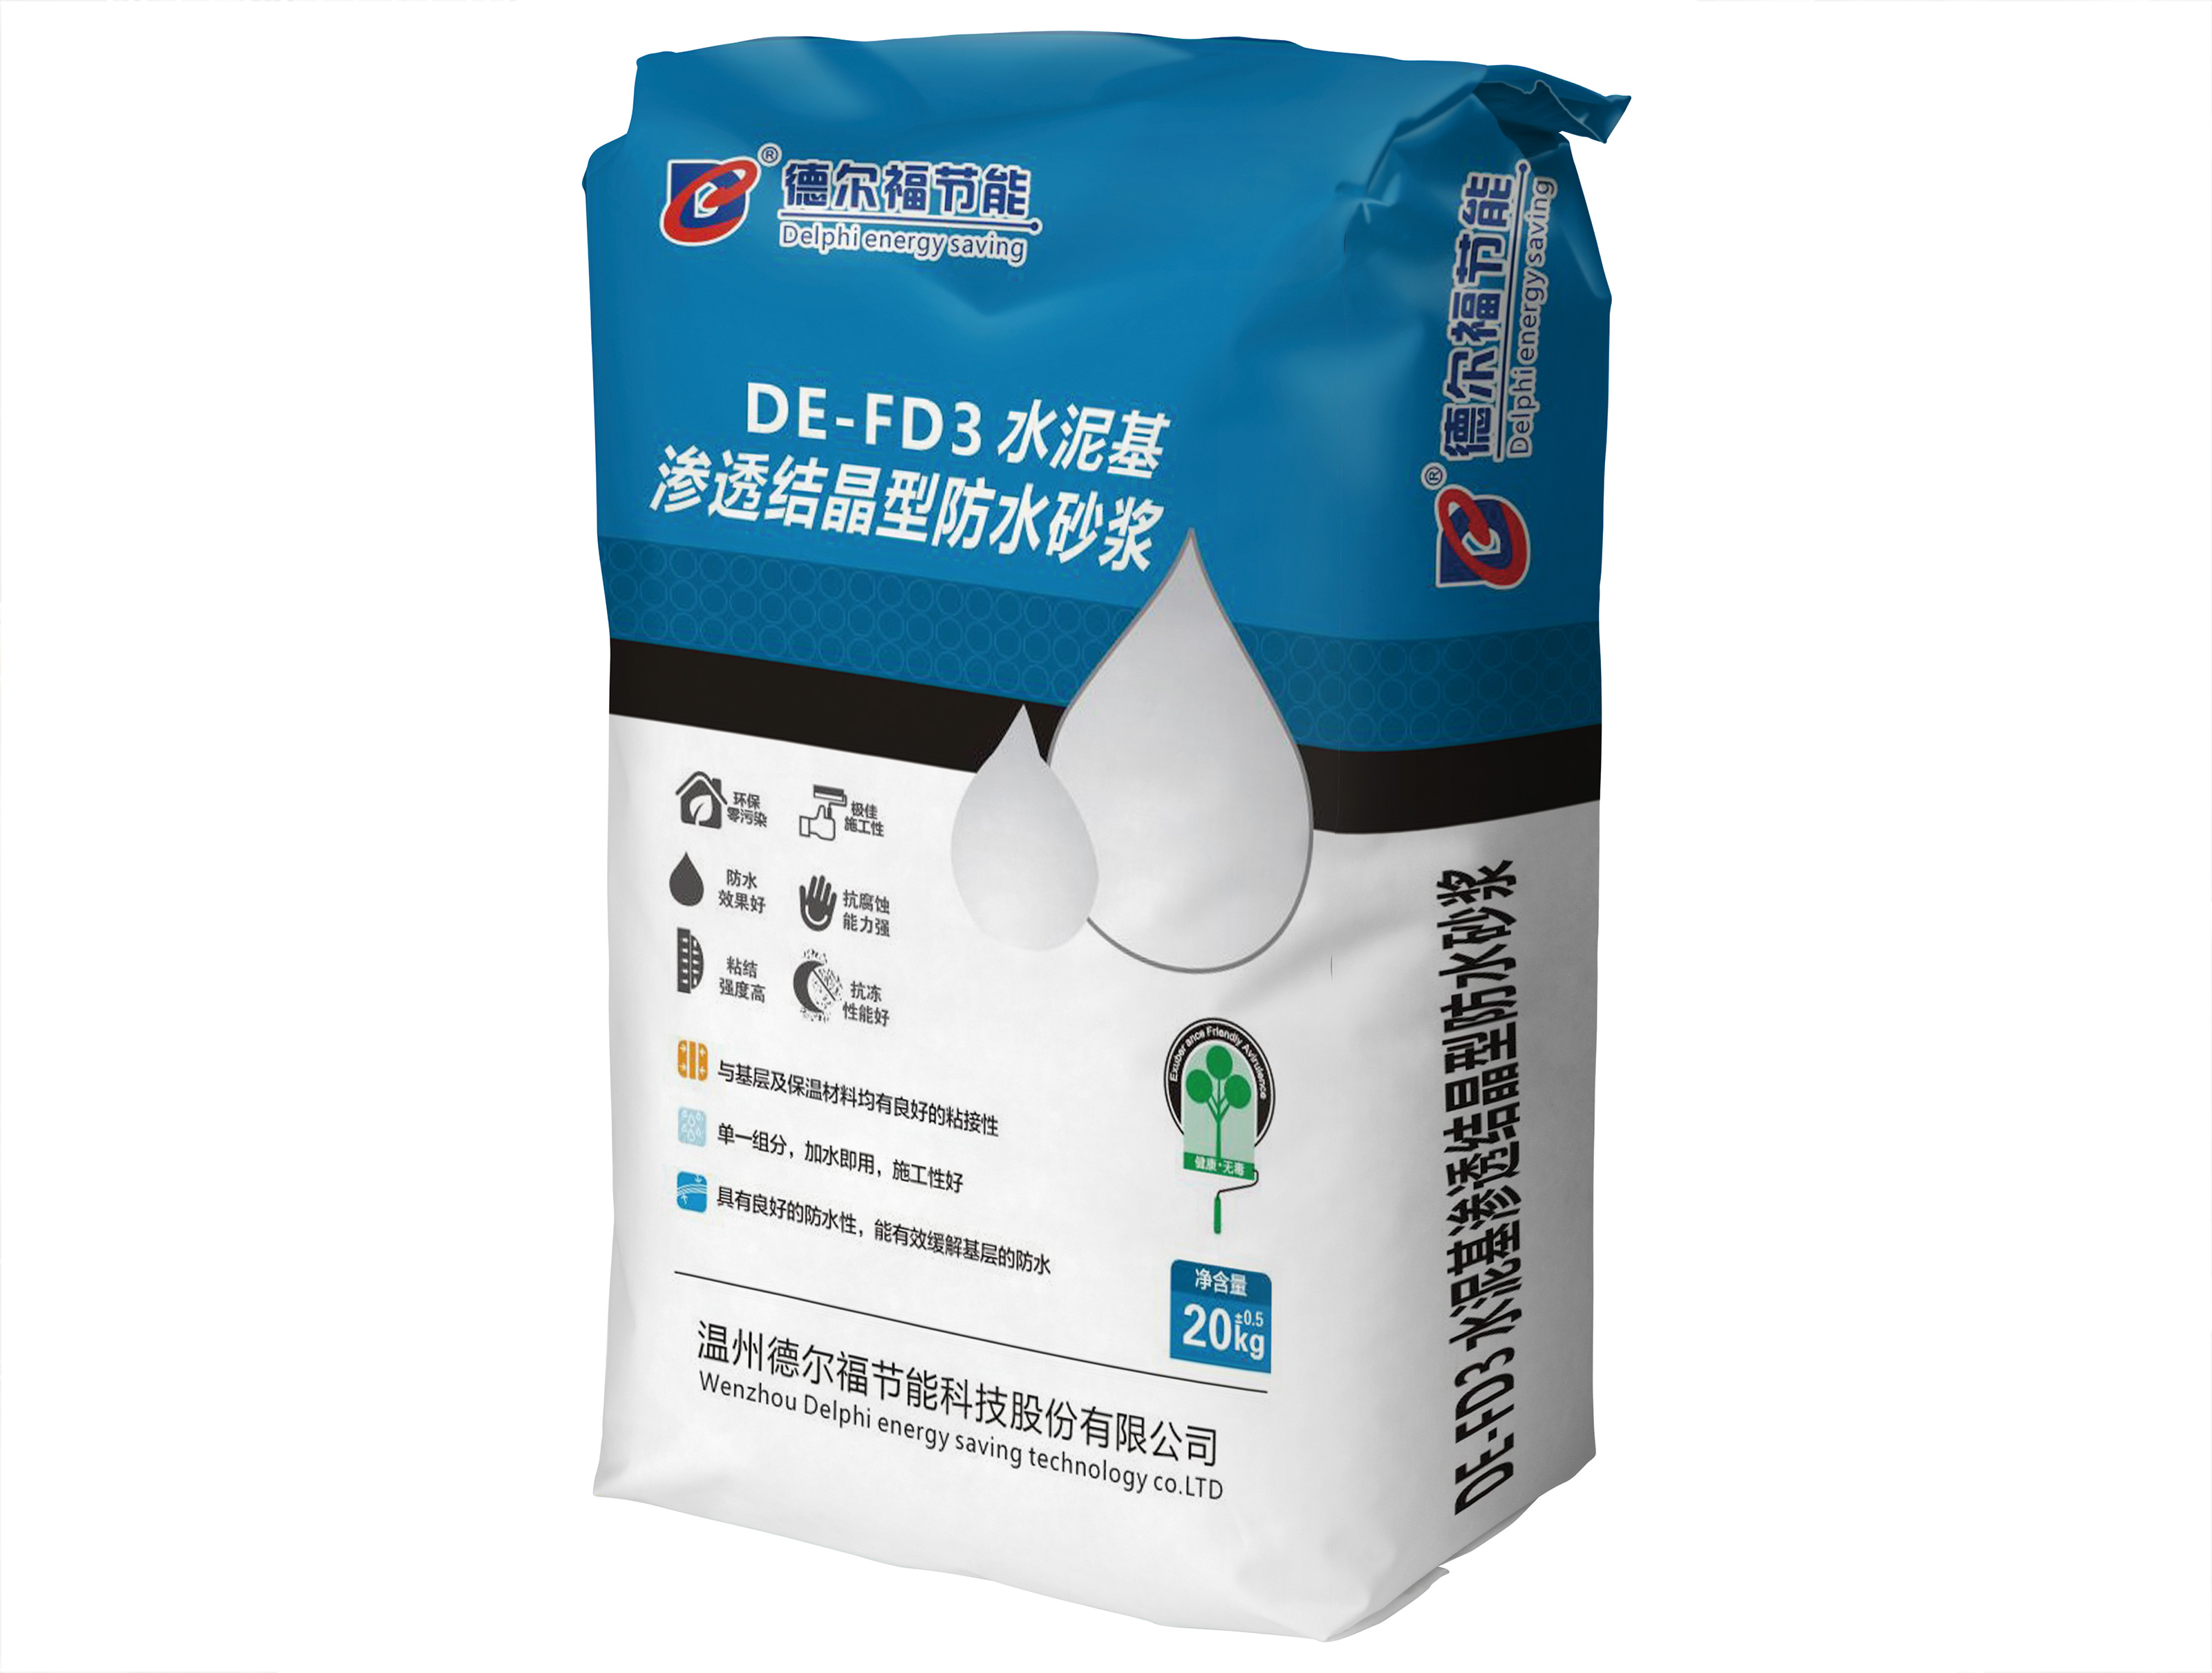 DE-FD3-水泥基滲透結晶型防水砂漿